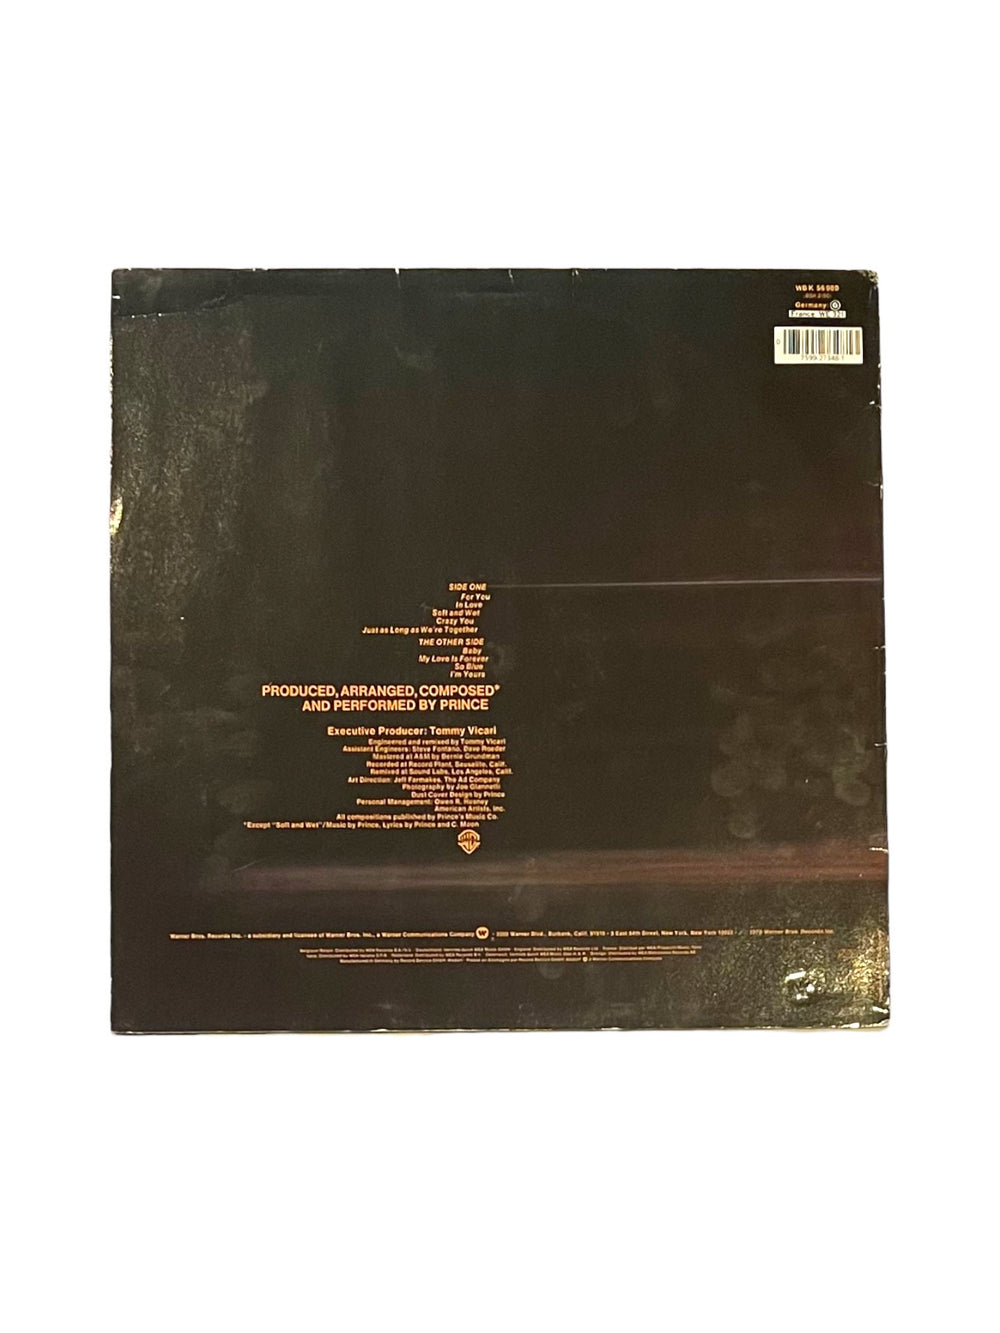 Prince – For You Vinyl Album UK / EU Release Original Release K56989